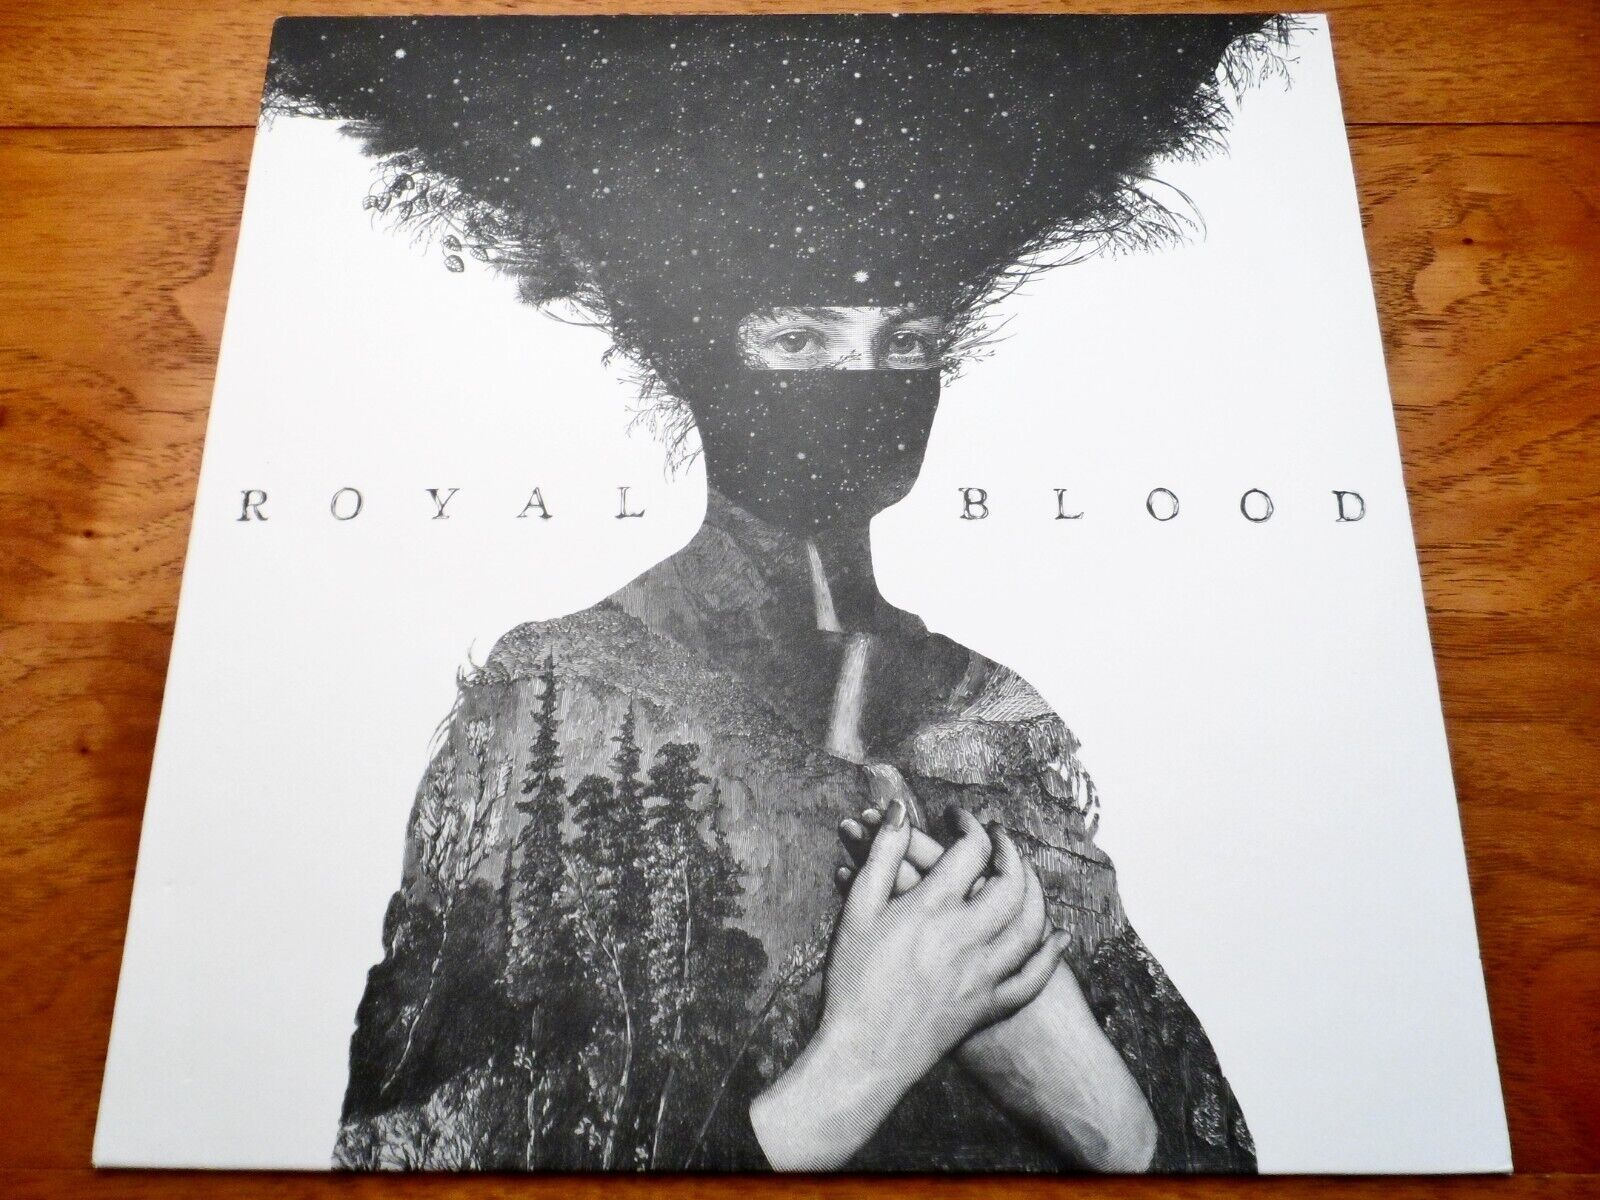 ♫ Royal Blood S/T Debut ♫ Rare 2014 Warner Bros. Original UK Import Vinyl LP NM